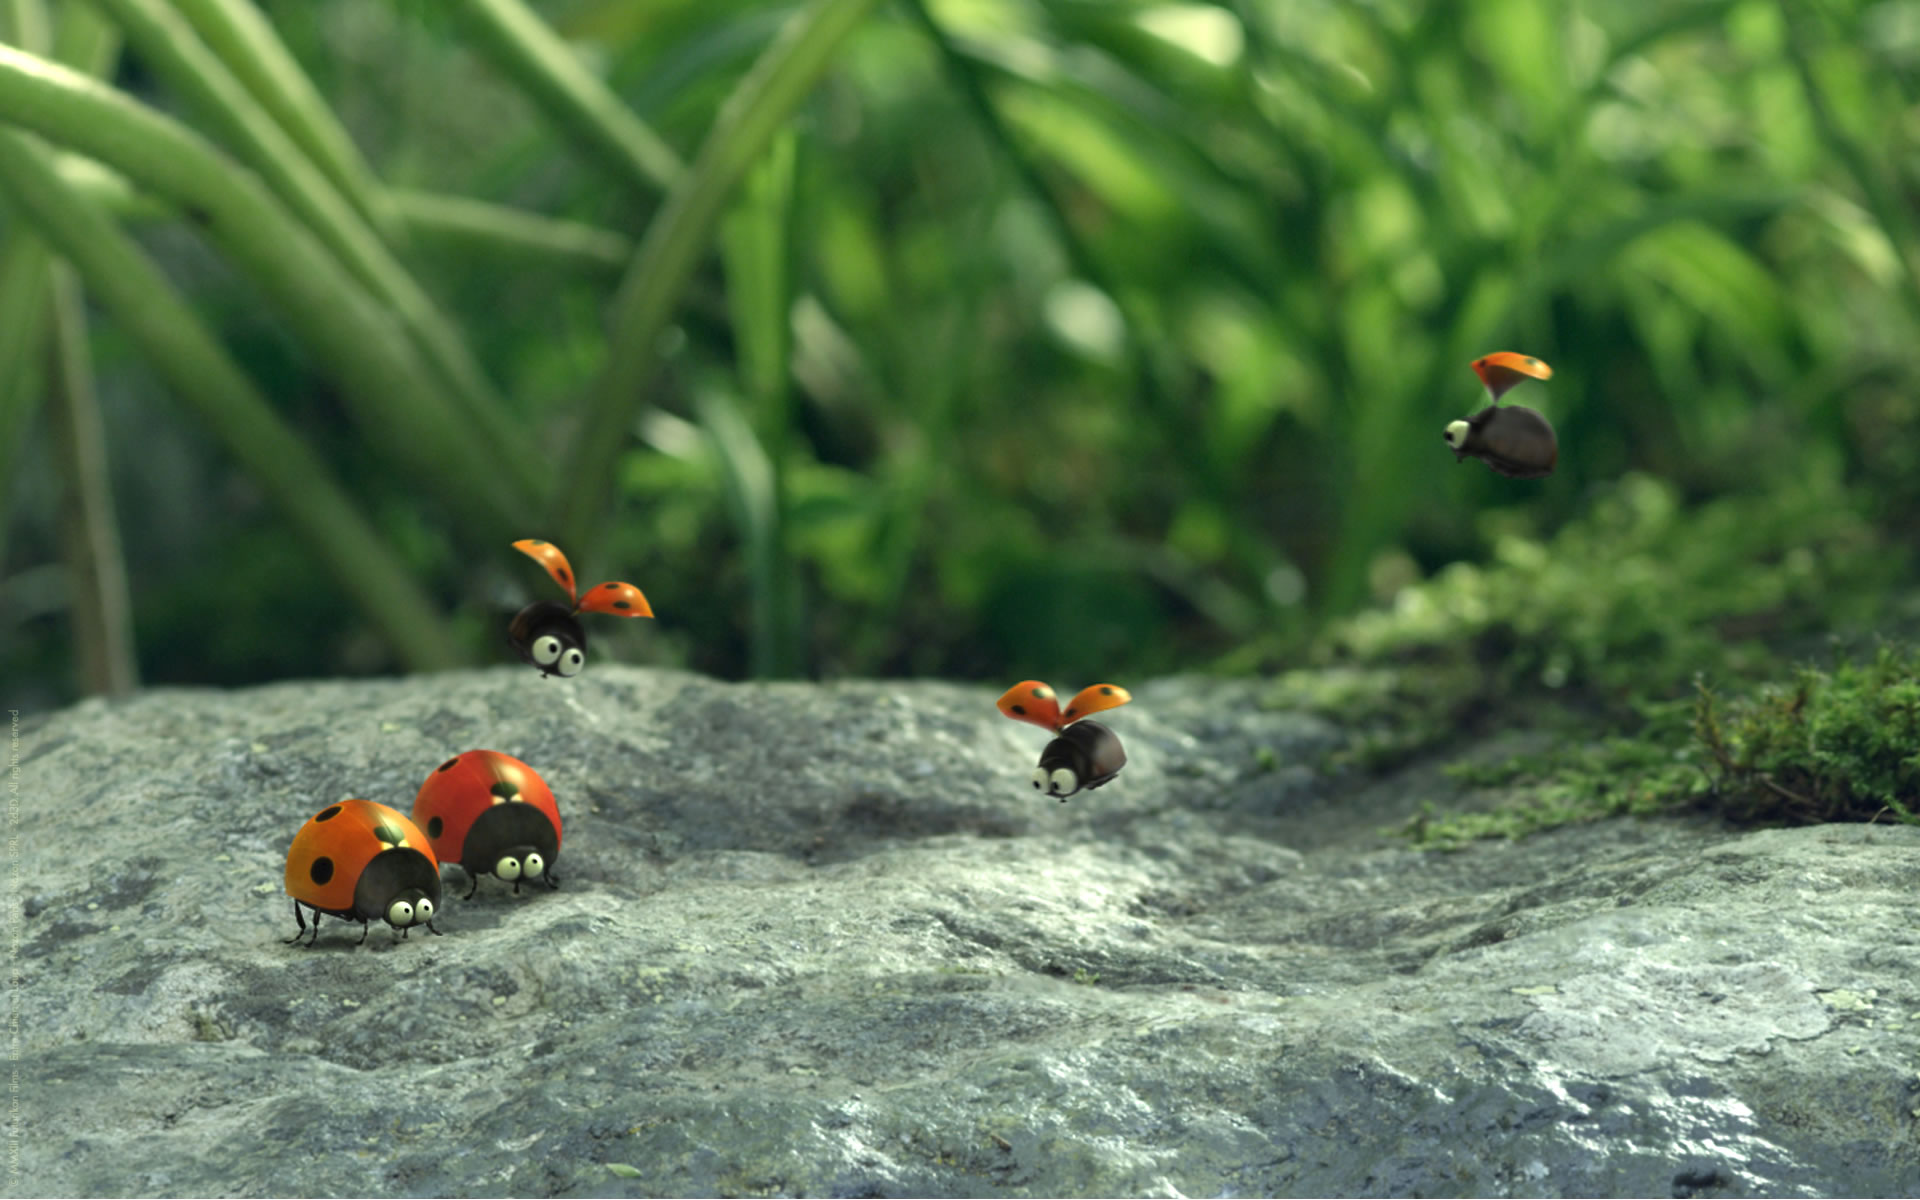 download wallpaper: lieveheersbeestjes uit miniscule vallei van de mieren wallpaper